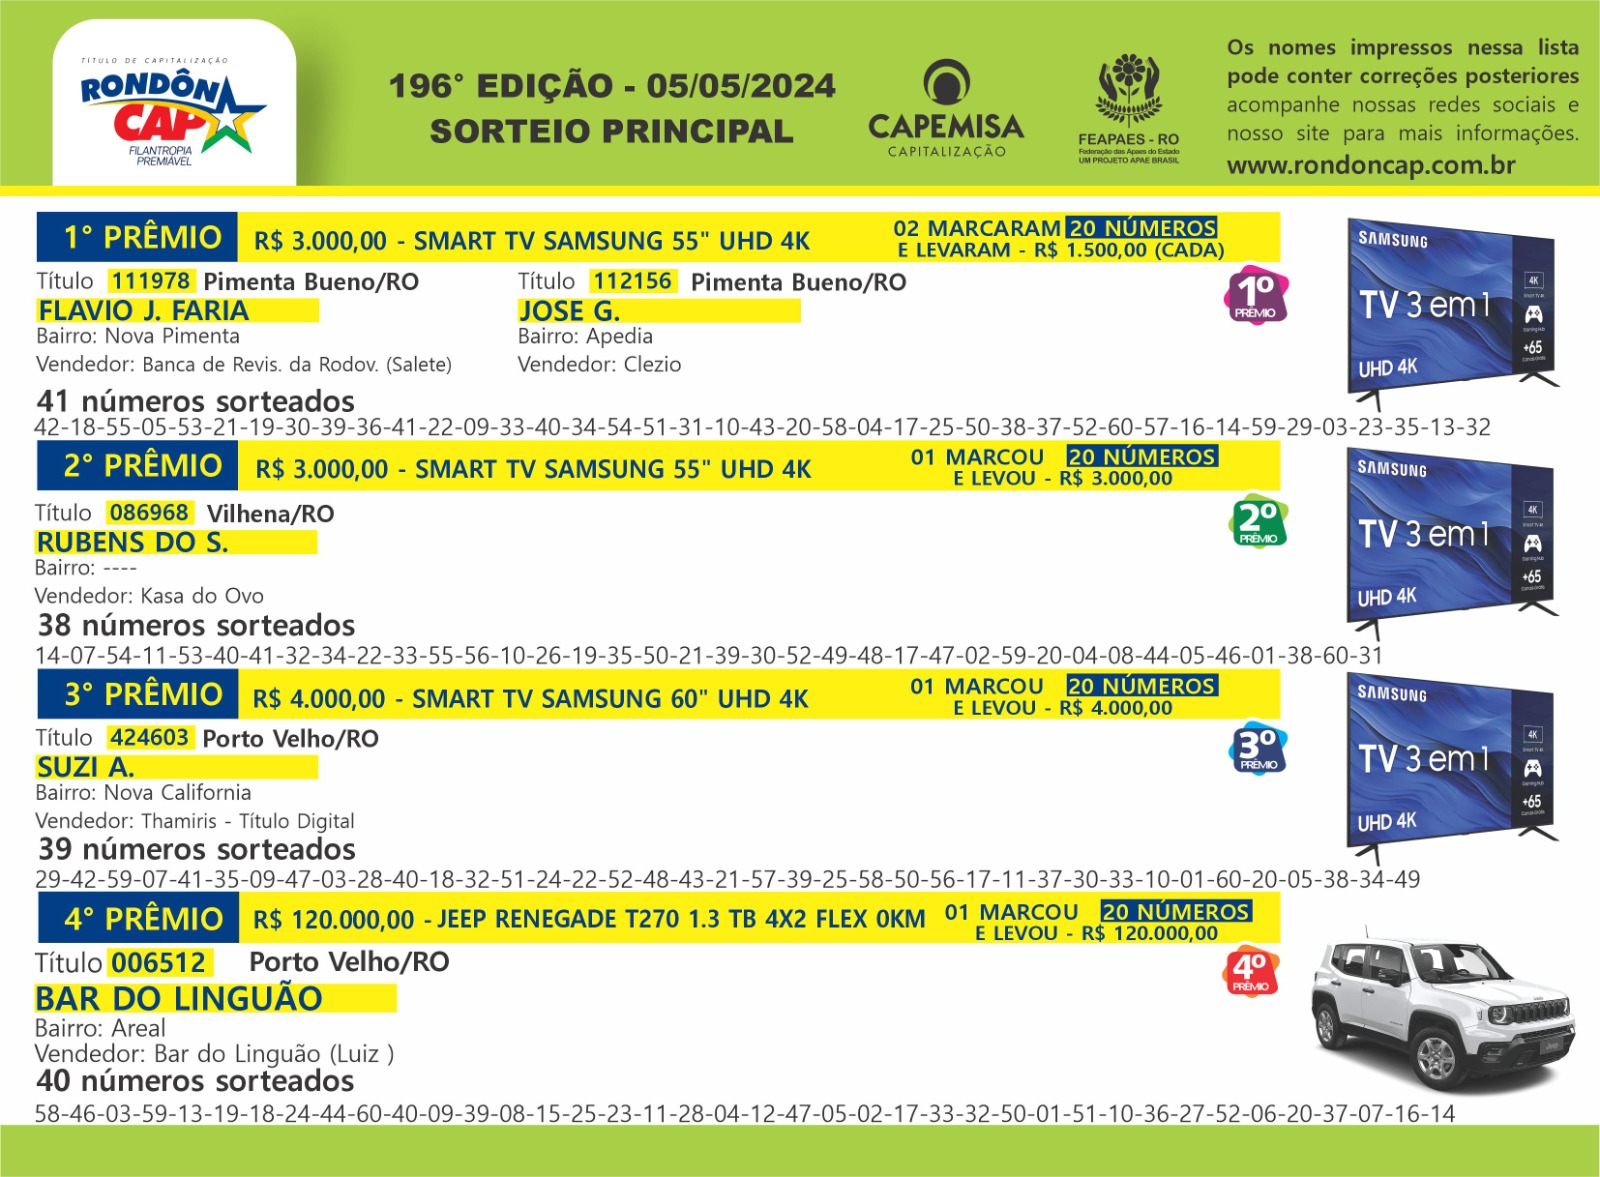 RondônCap de domingo, dia 05, sorteou um Jeep Renegade e mais 30 mil reais em prêmios - News Rondônia